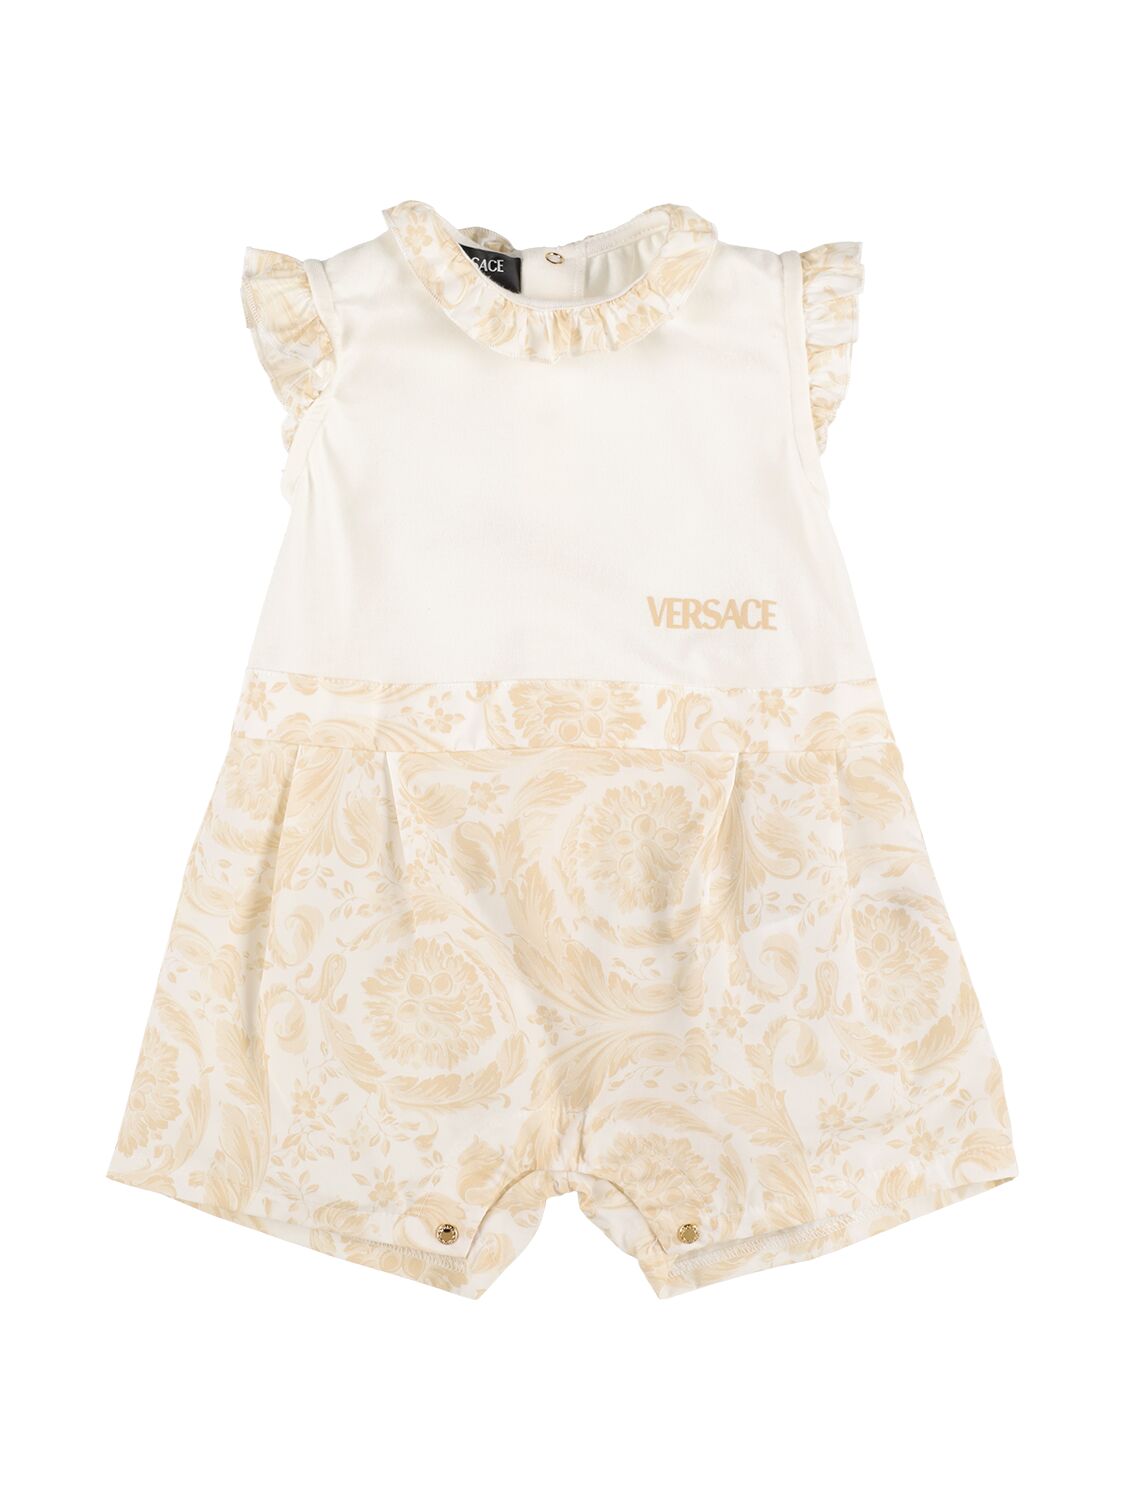 Versace Babies' 印花棉质府绸连身裤 In White,beige